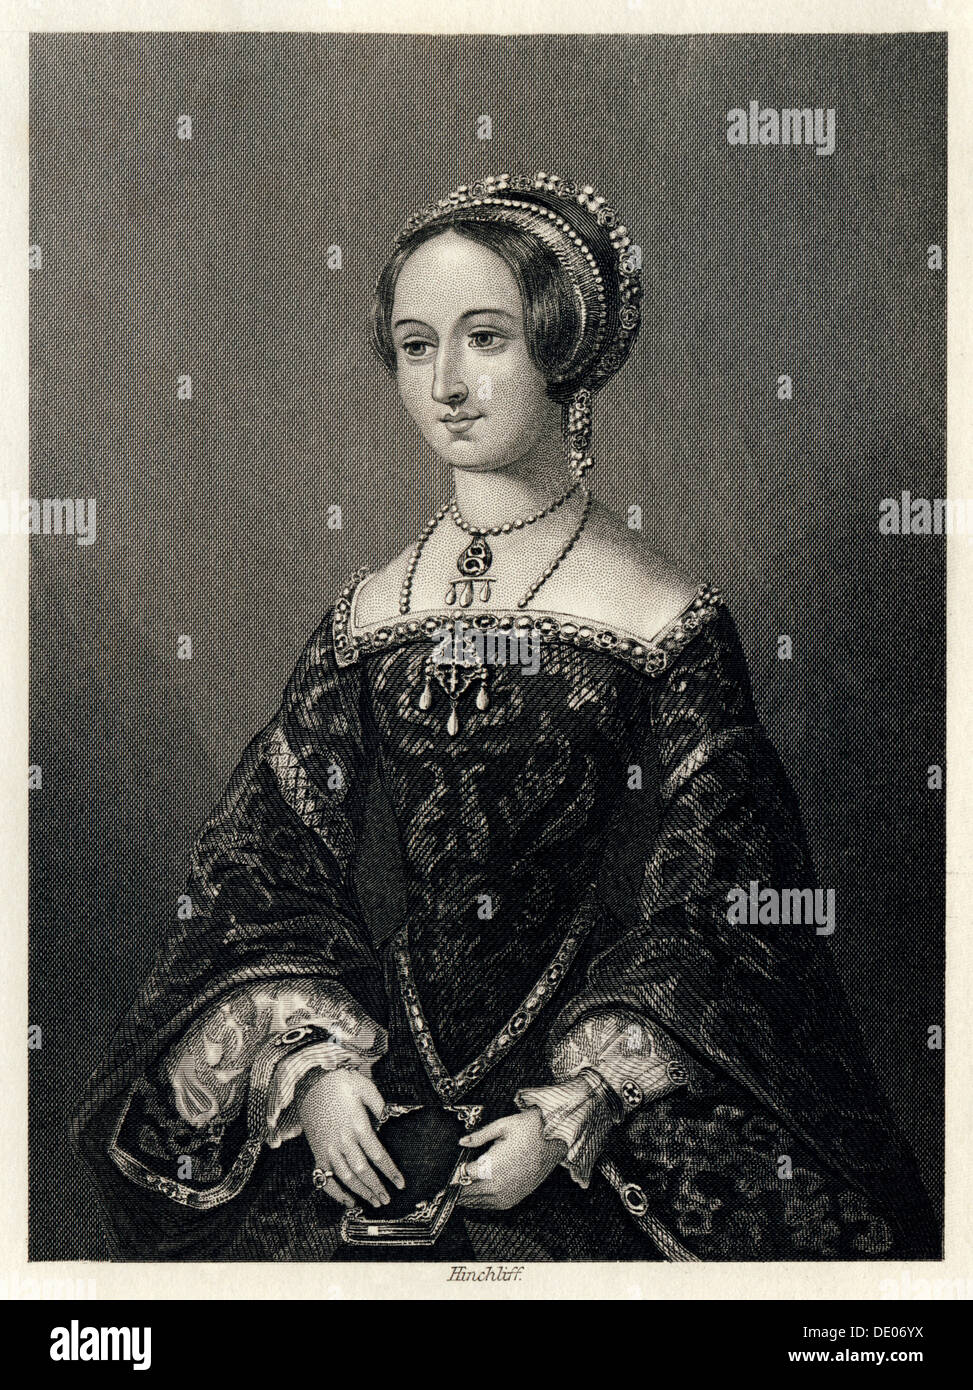 Marguerite de Navarre, Queen Consort of Henry II of Navarre, (1864).  Artist: John James Hinchcliff Stock Photo